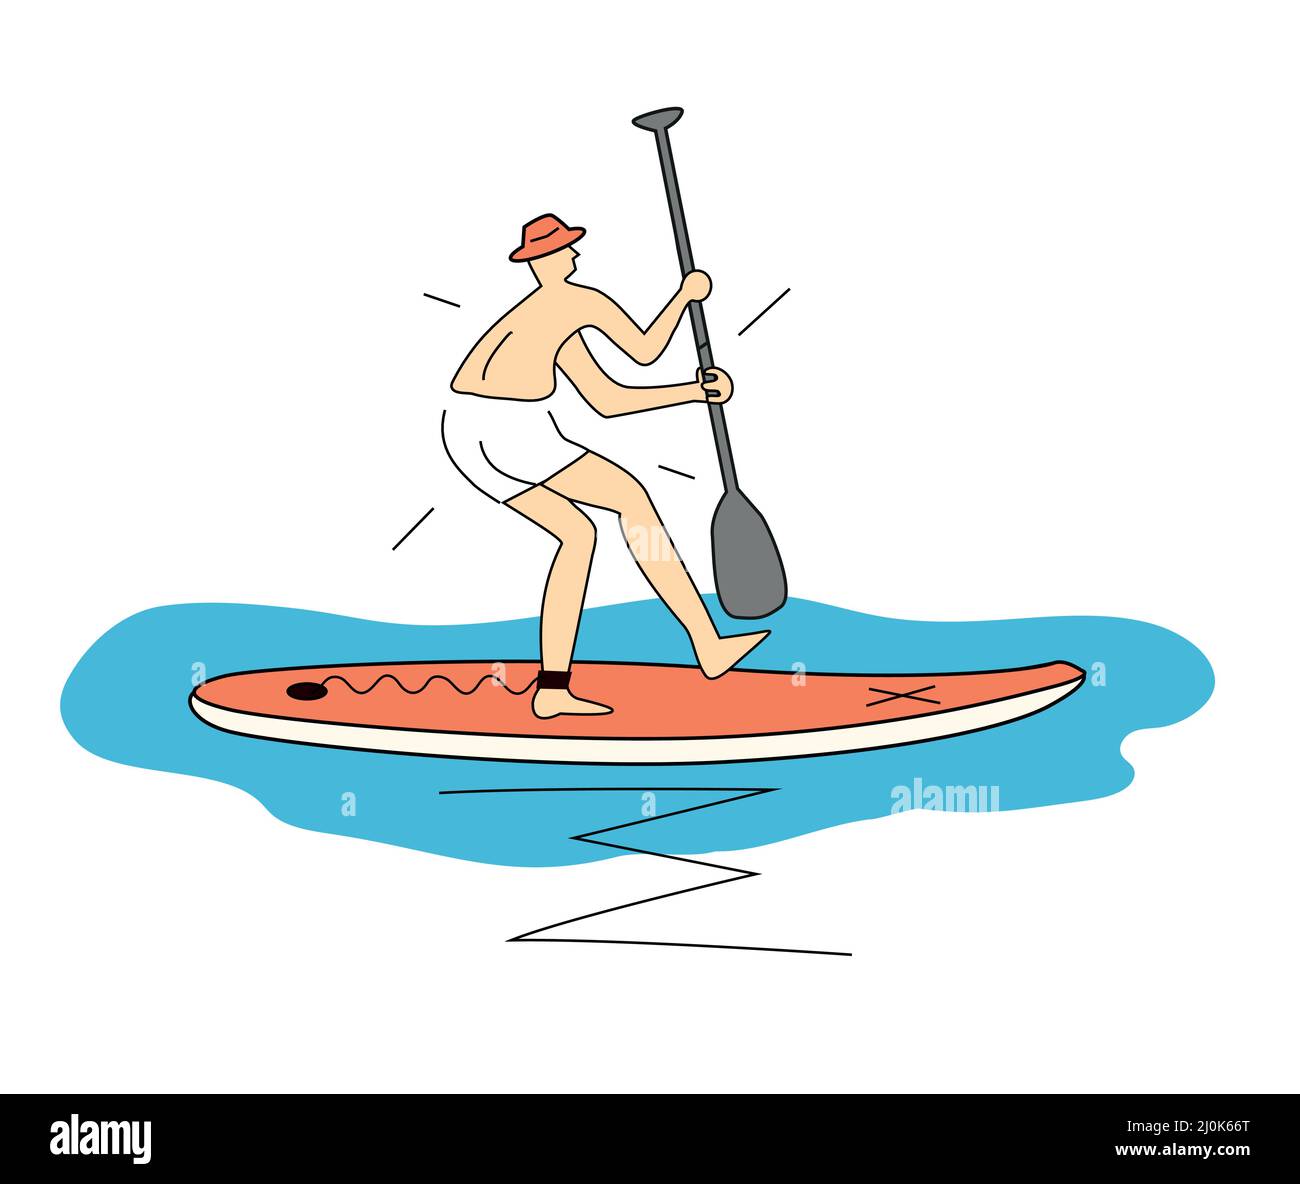 Principiante divertido en tabla de surf de remo, dibujos animados. Estilizada ilustración simple de hombre asustado divertido con sombrero montando en un tablero de remo. Diseño de camiseta. Vector ava Ilustración del Vector